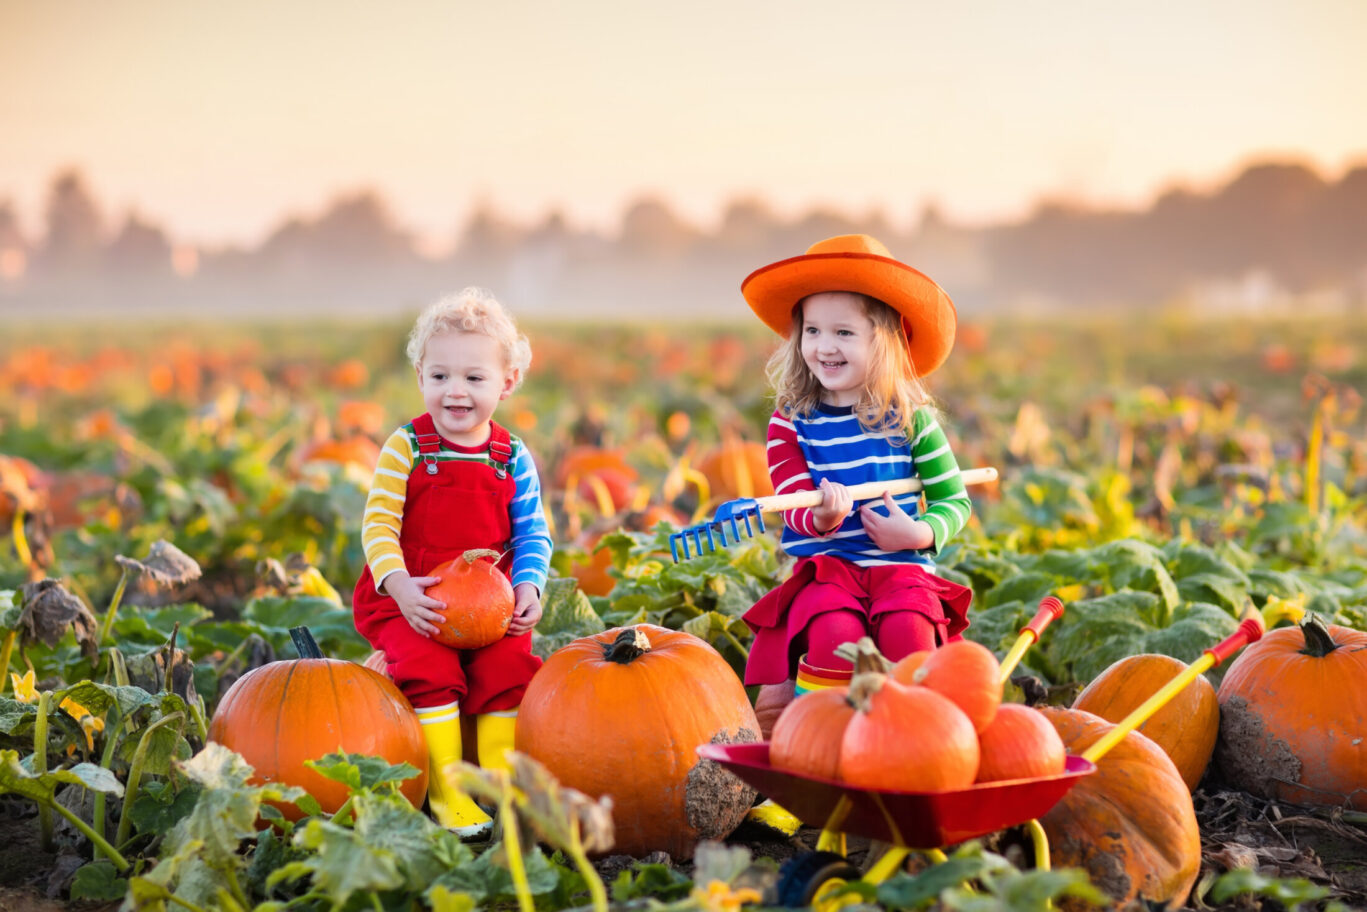 Children at a pumpkin patch